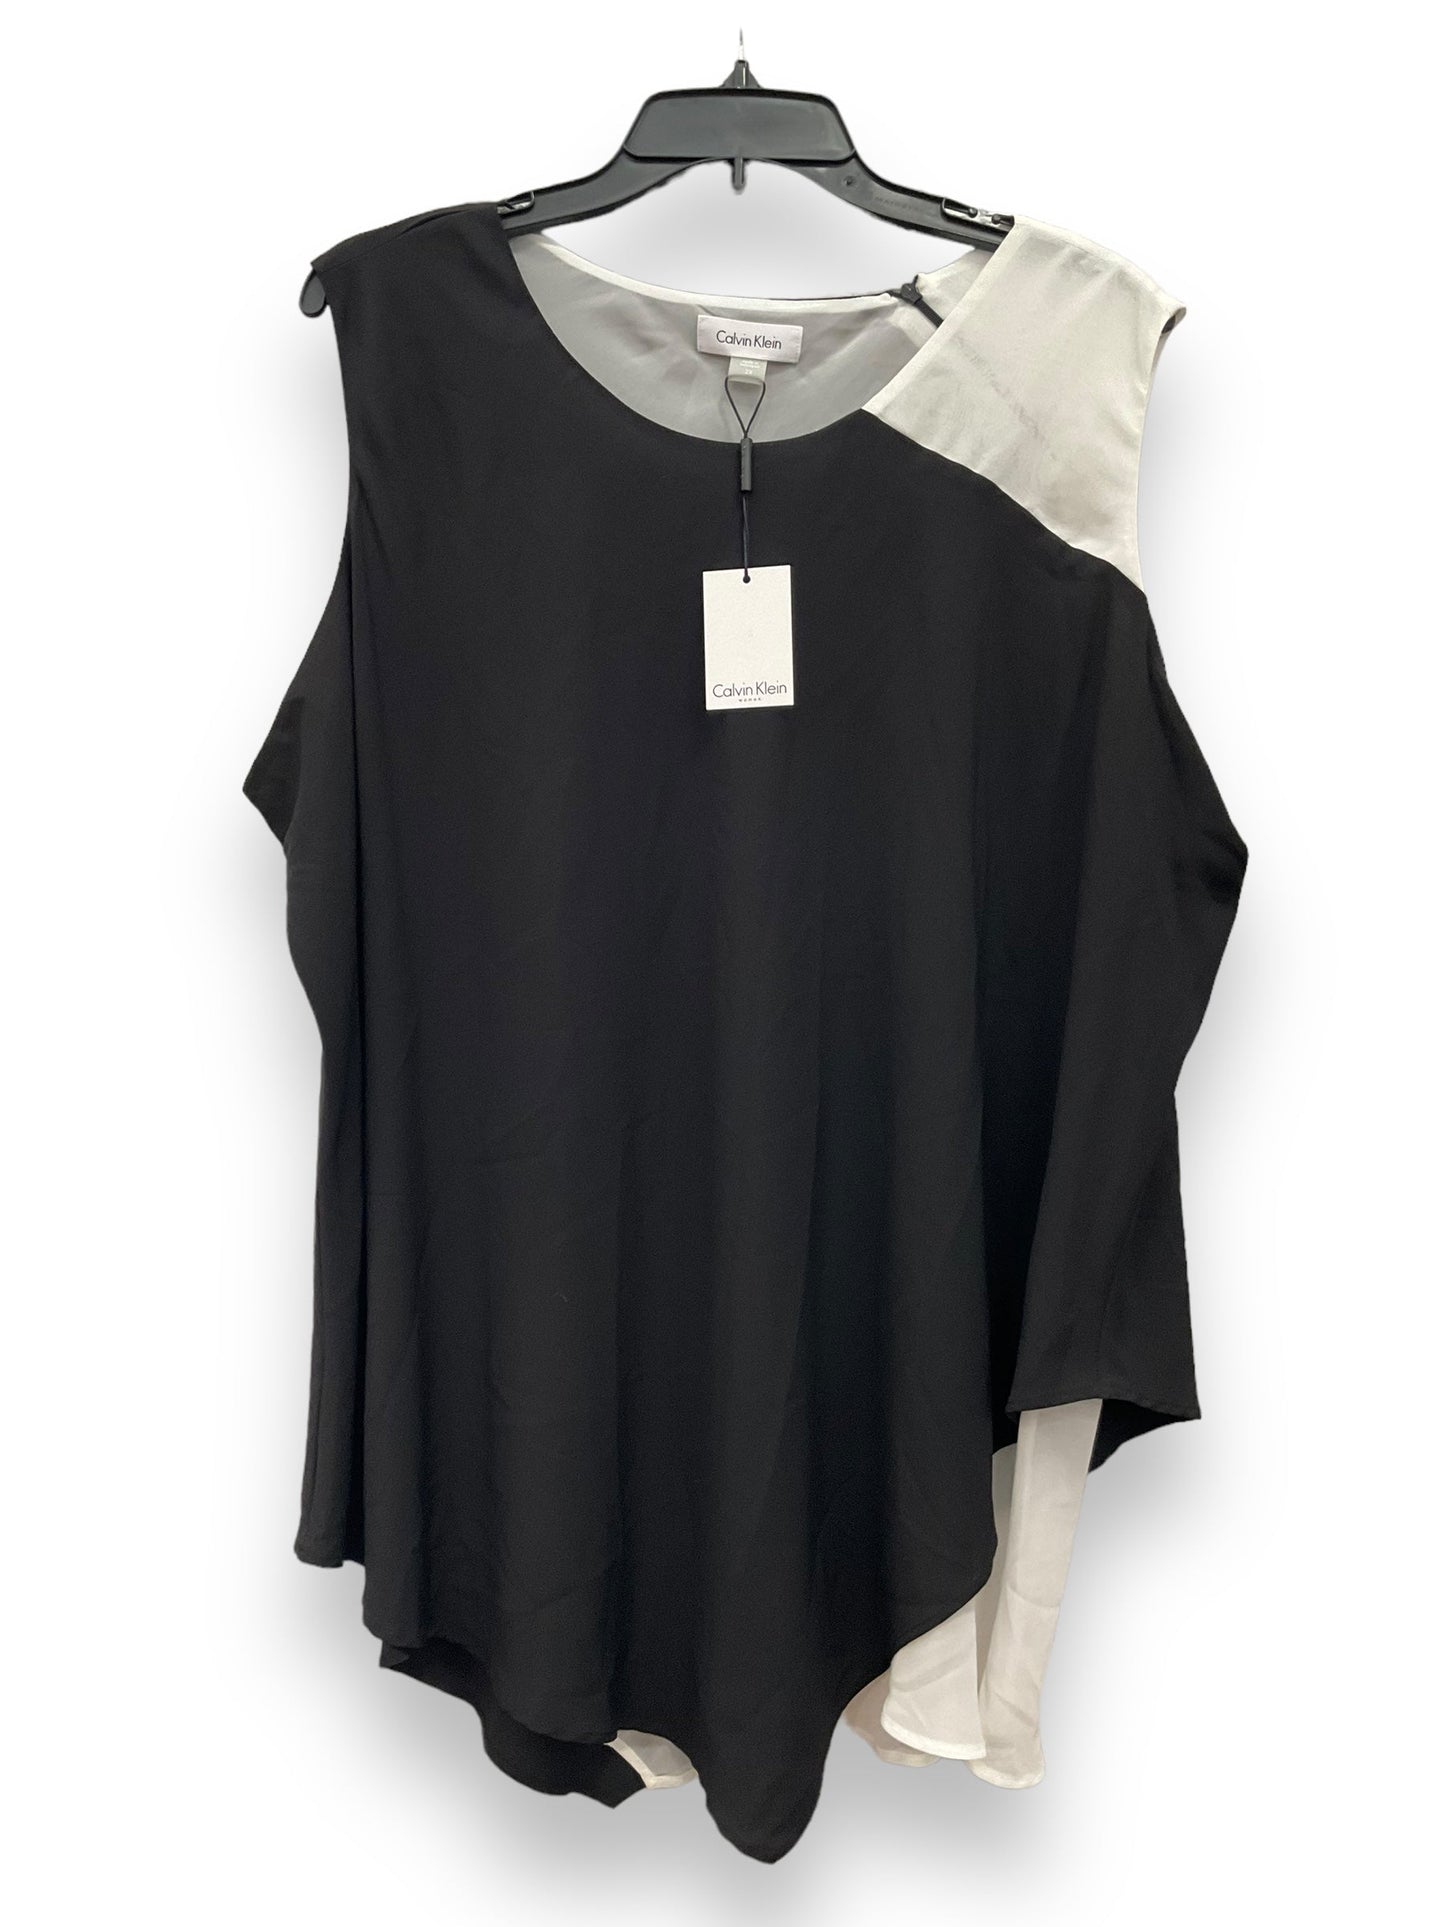 Black & White Blouse Sleeveless Calvin Klein, Size 2x